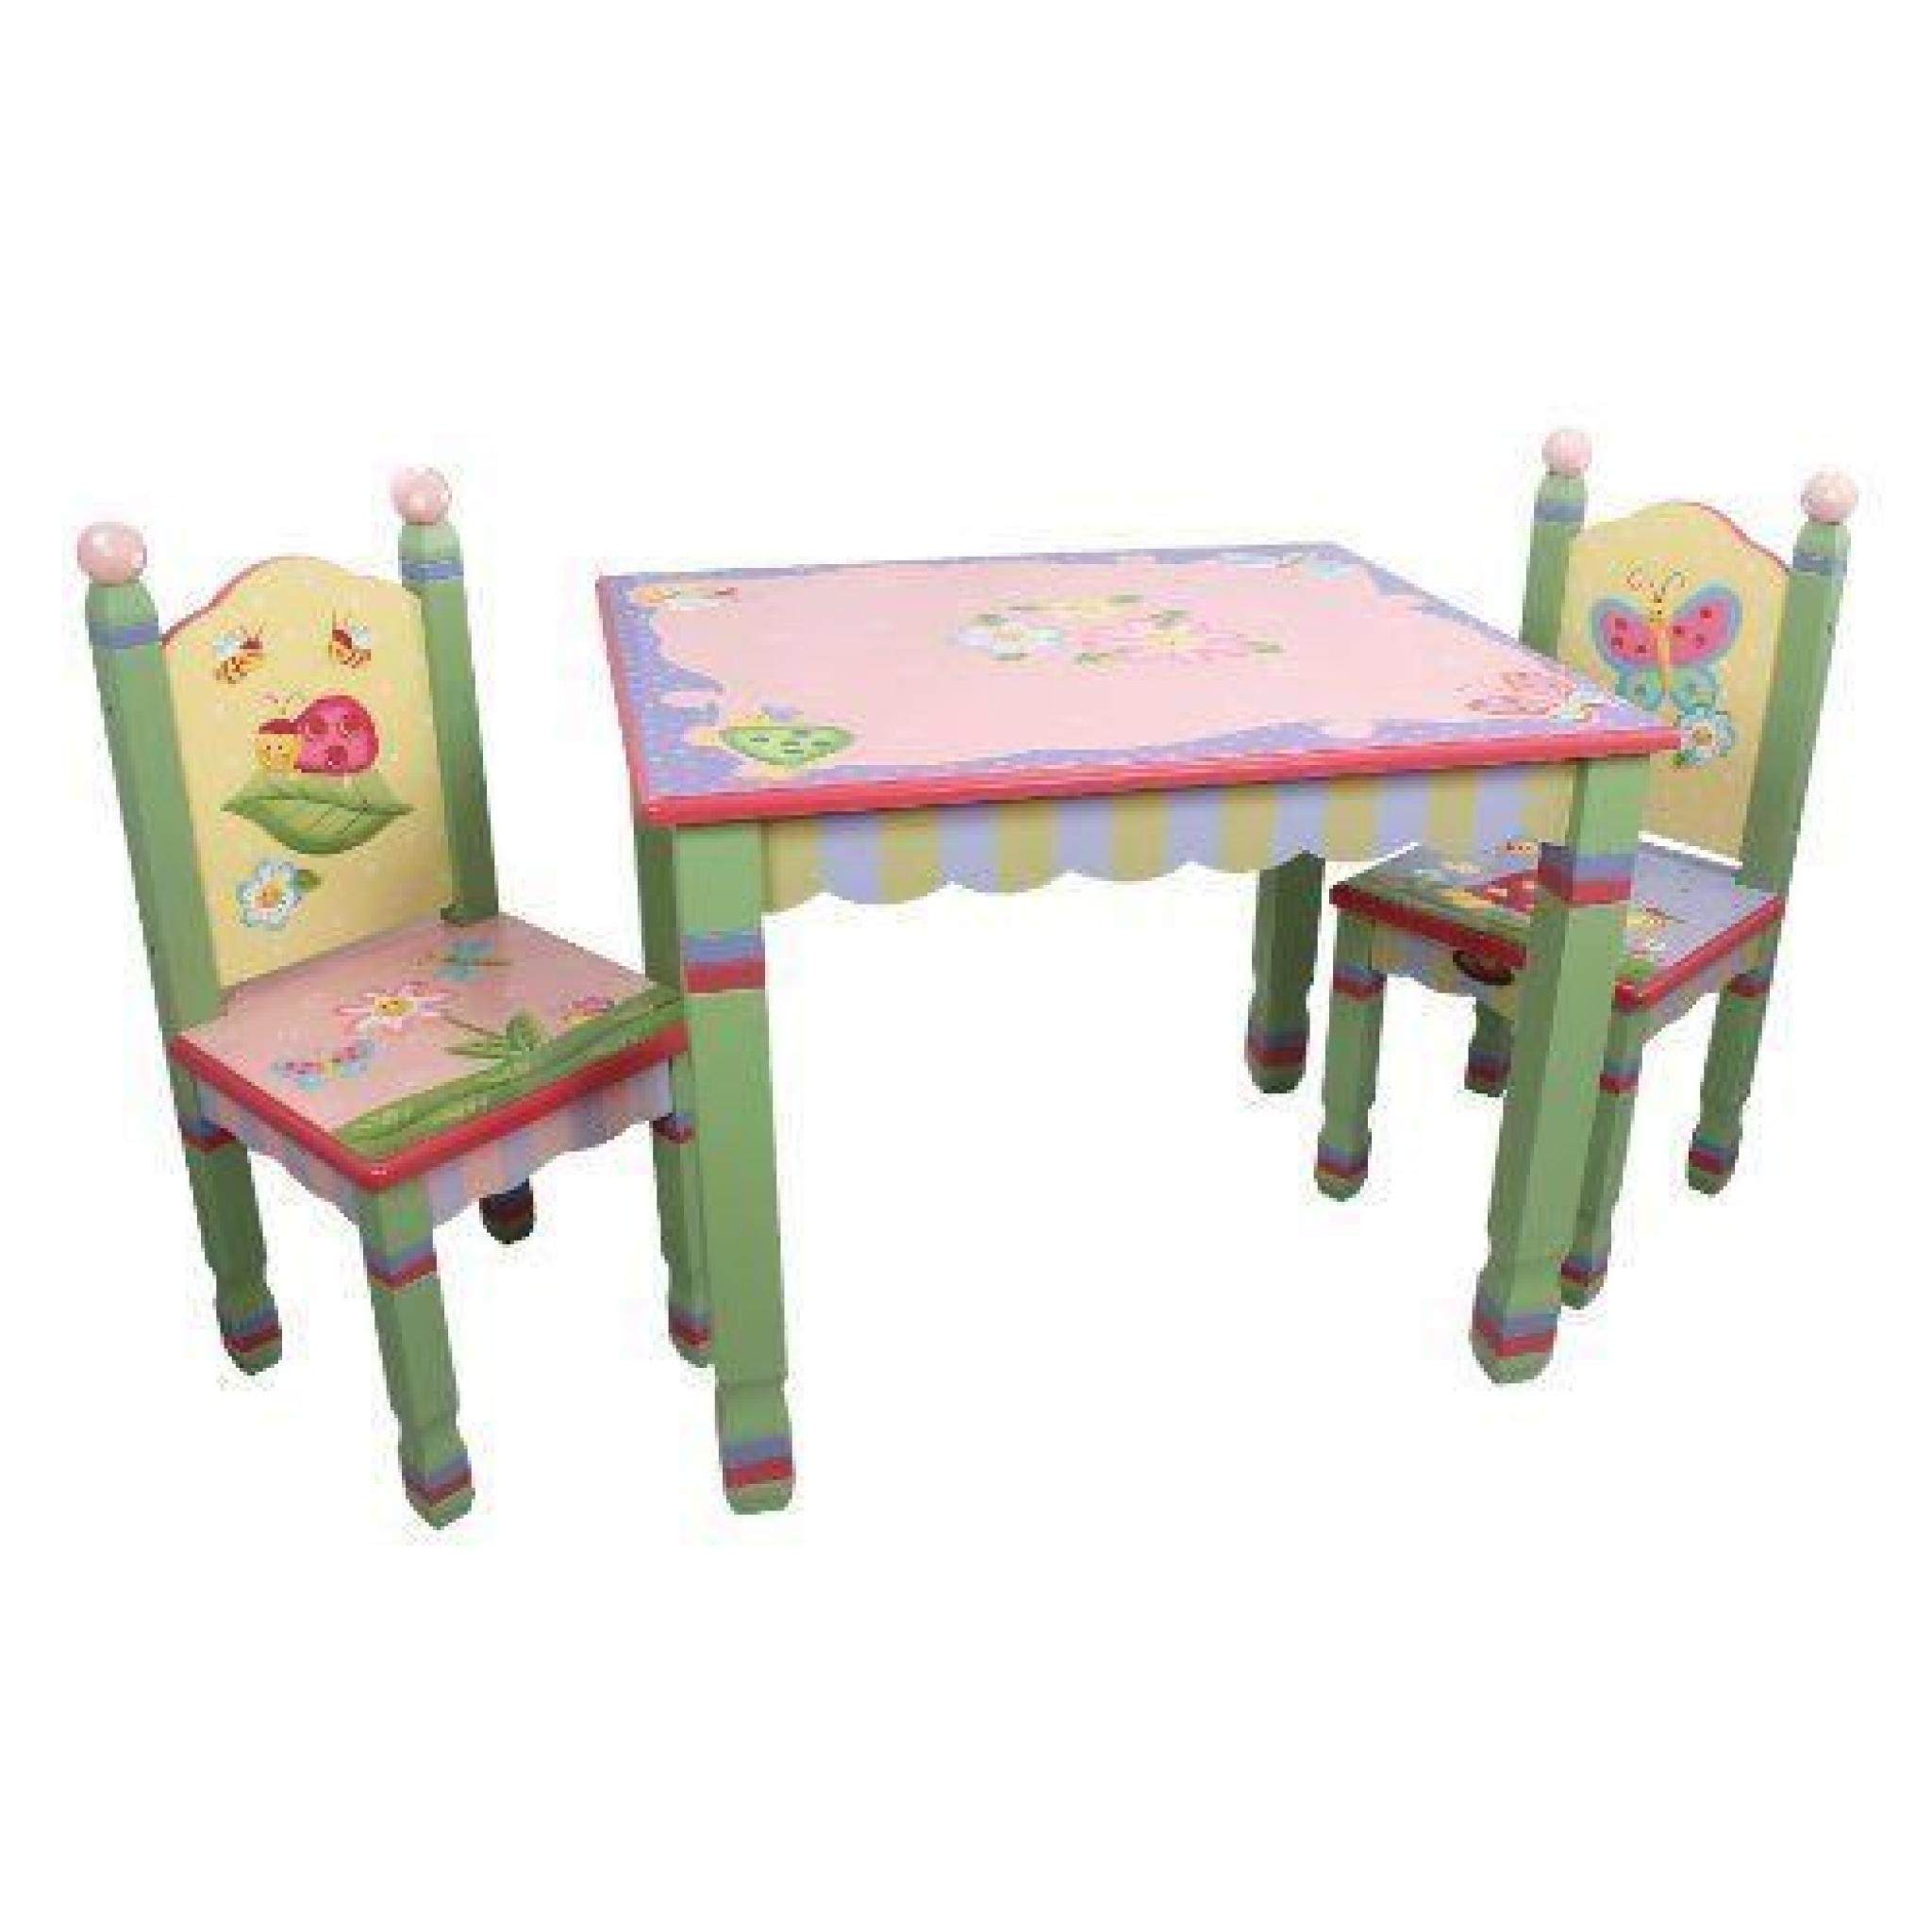 Primary PRODUCTS LTD Table Magic Garden Multicolore…